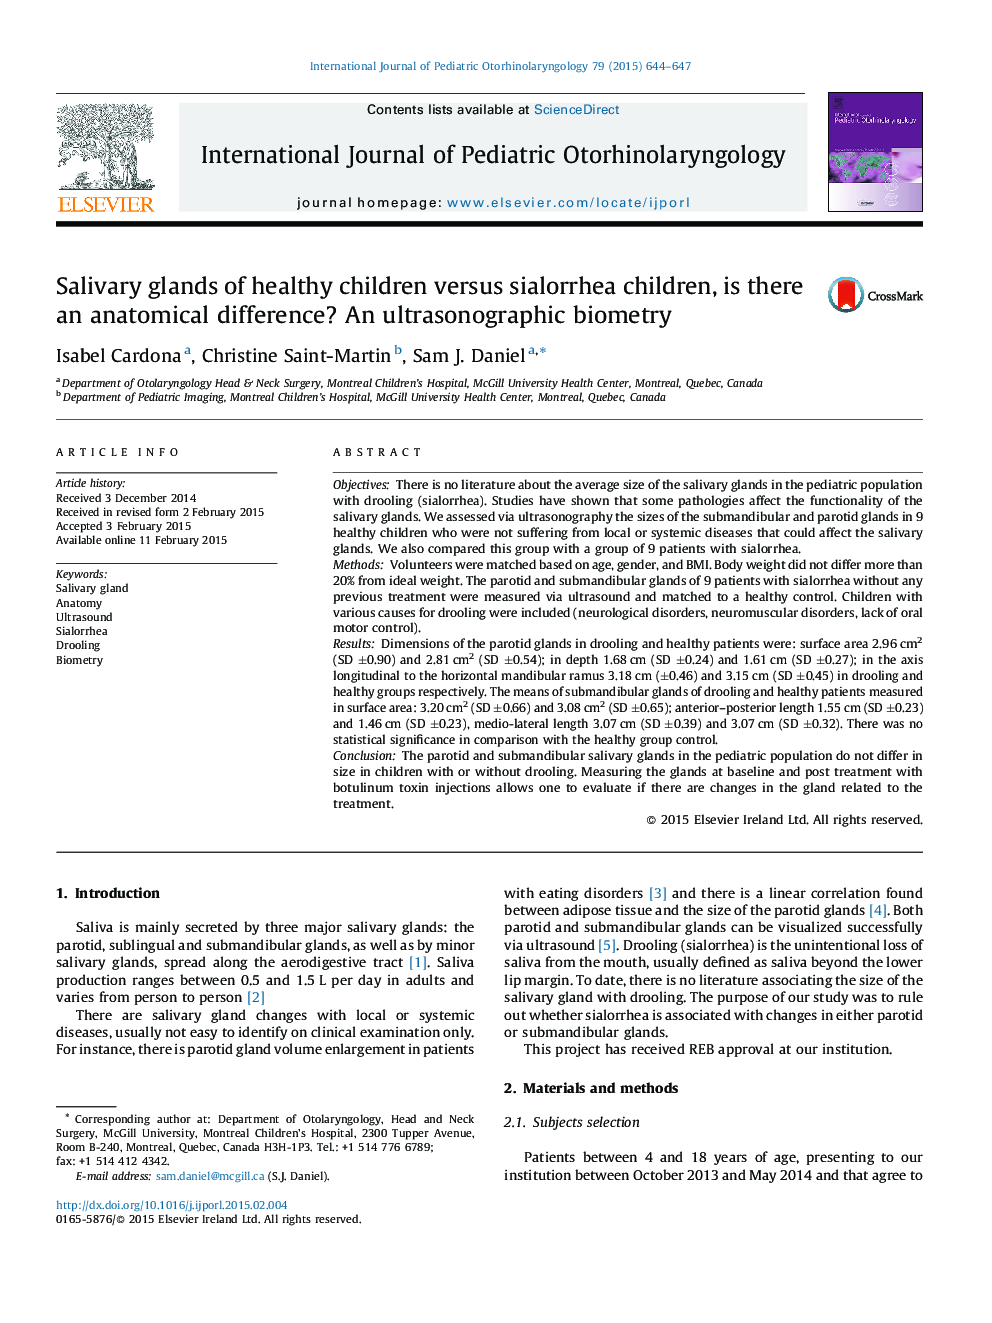 غدد بزاق کودکان سالم در مقابل کودکان سیلوره، آیا تفاوت آناتومیکی وجود دارد؟ بیومتریک سونوگرافی 